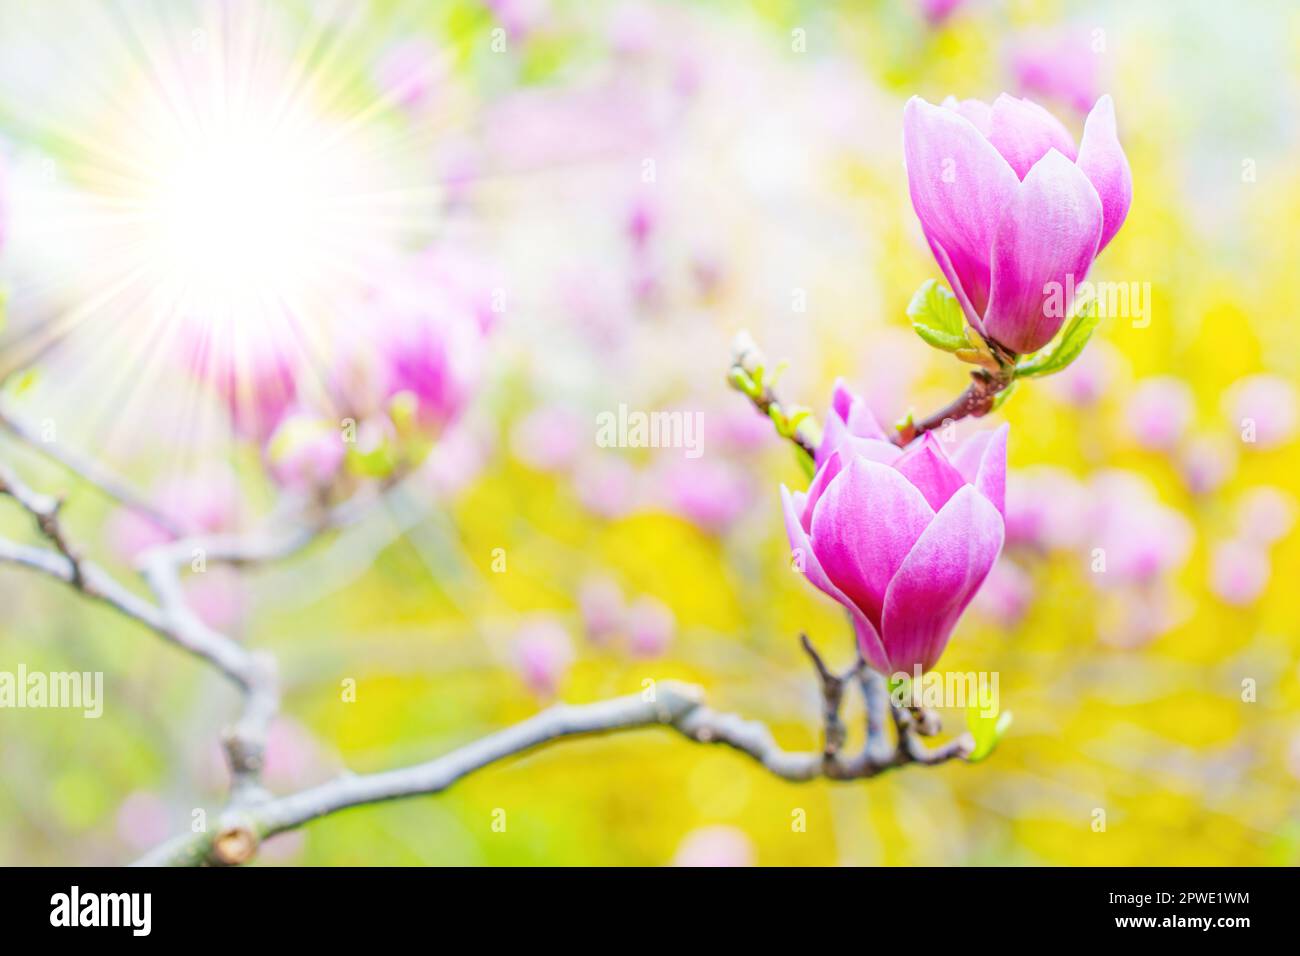 Due fiori di magnolia rosa in fiore brillano ai raggi del sole, adagiati su uno sfondo giallo vibrante catturato in un giardino. L'ar della primavera creativa Foto Stock